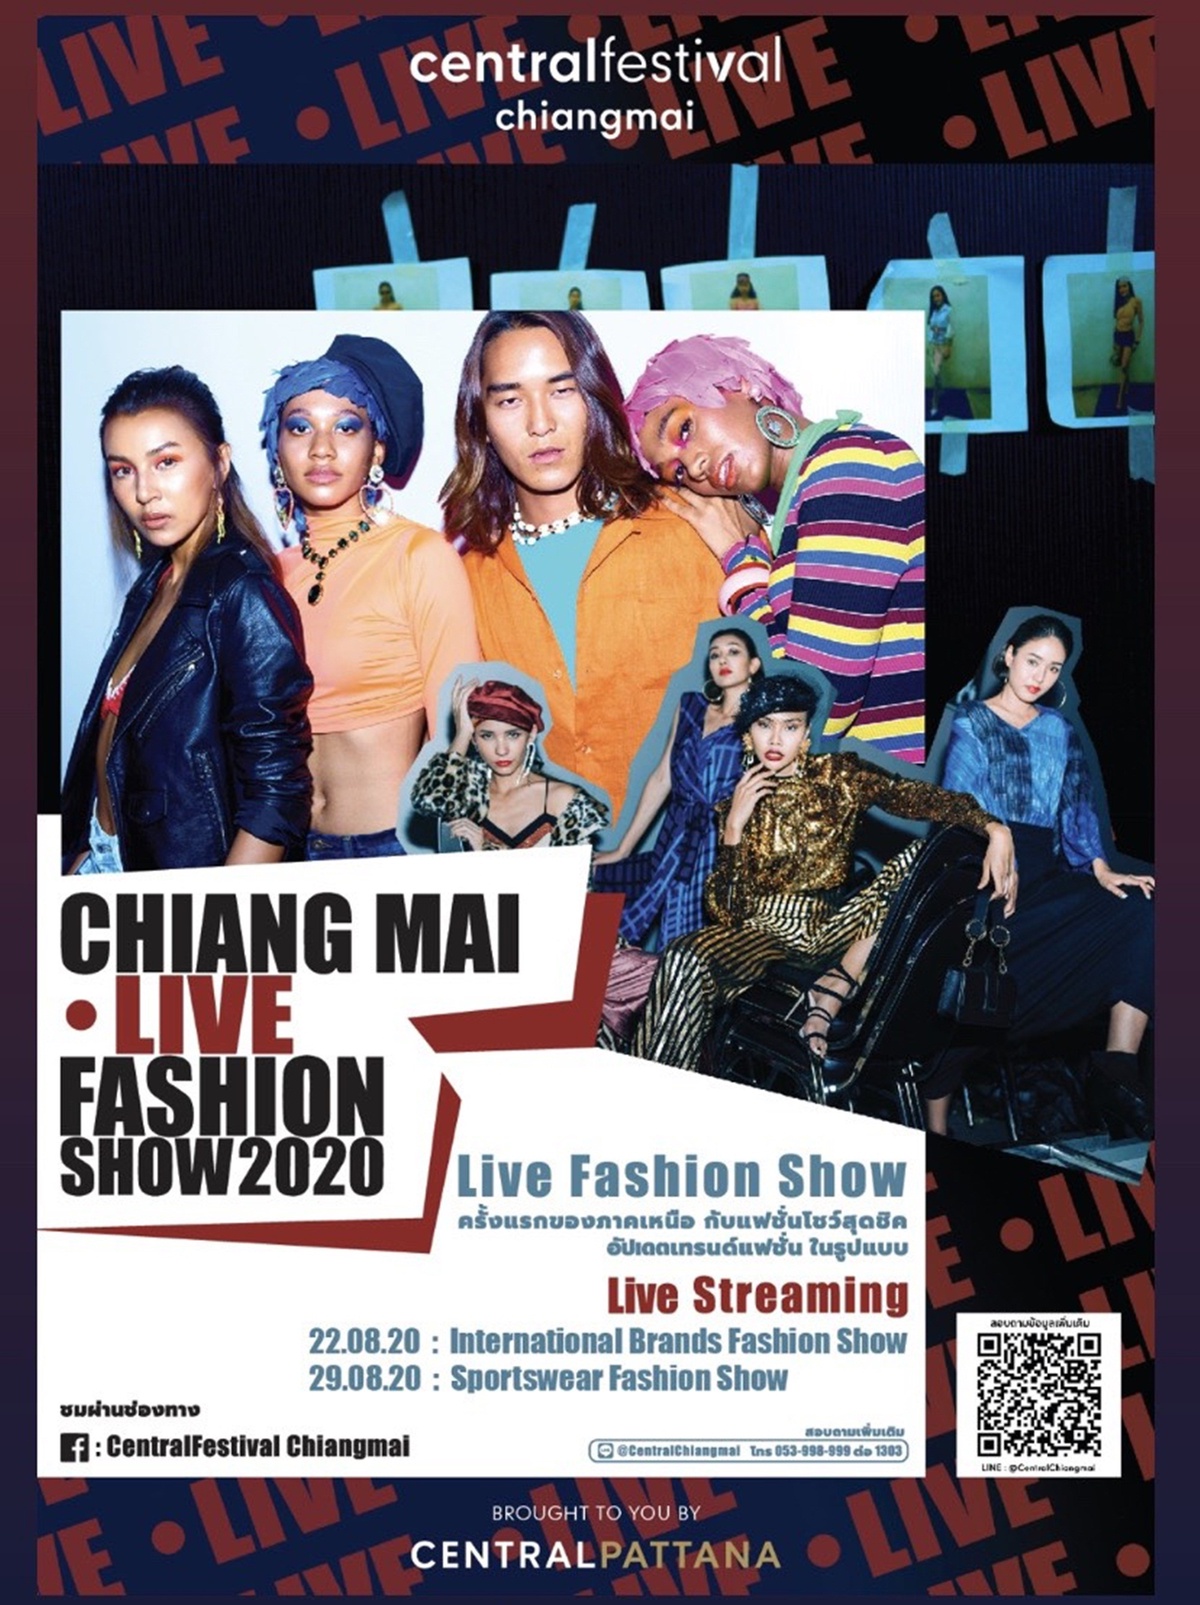 เซ็นทรัลเฟสติวัล เชียงใหม่ เปิดรันเวย์แบบ New normal จัด 'Chiangmai Live Fashion Show 2020 ครั้งแรกของภาคเหนือกับแฟชั่นโชว์ในรูปแบบ Live Streaming